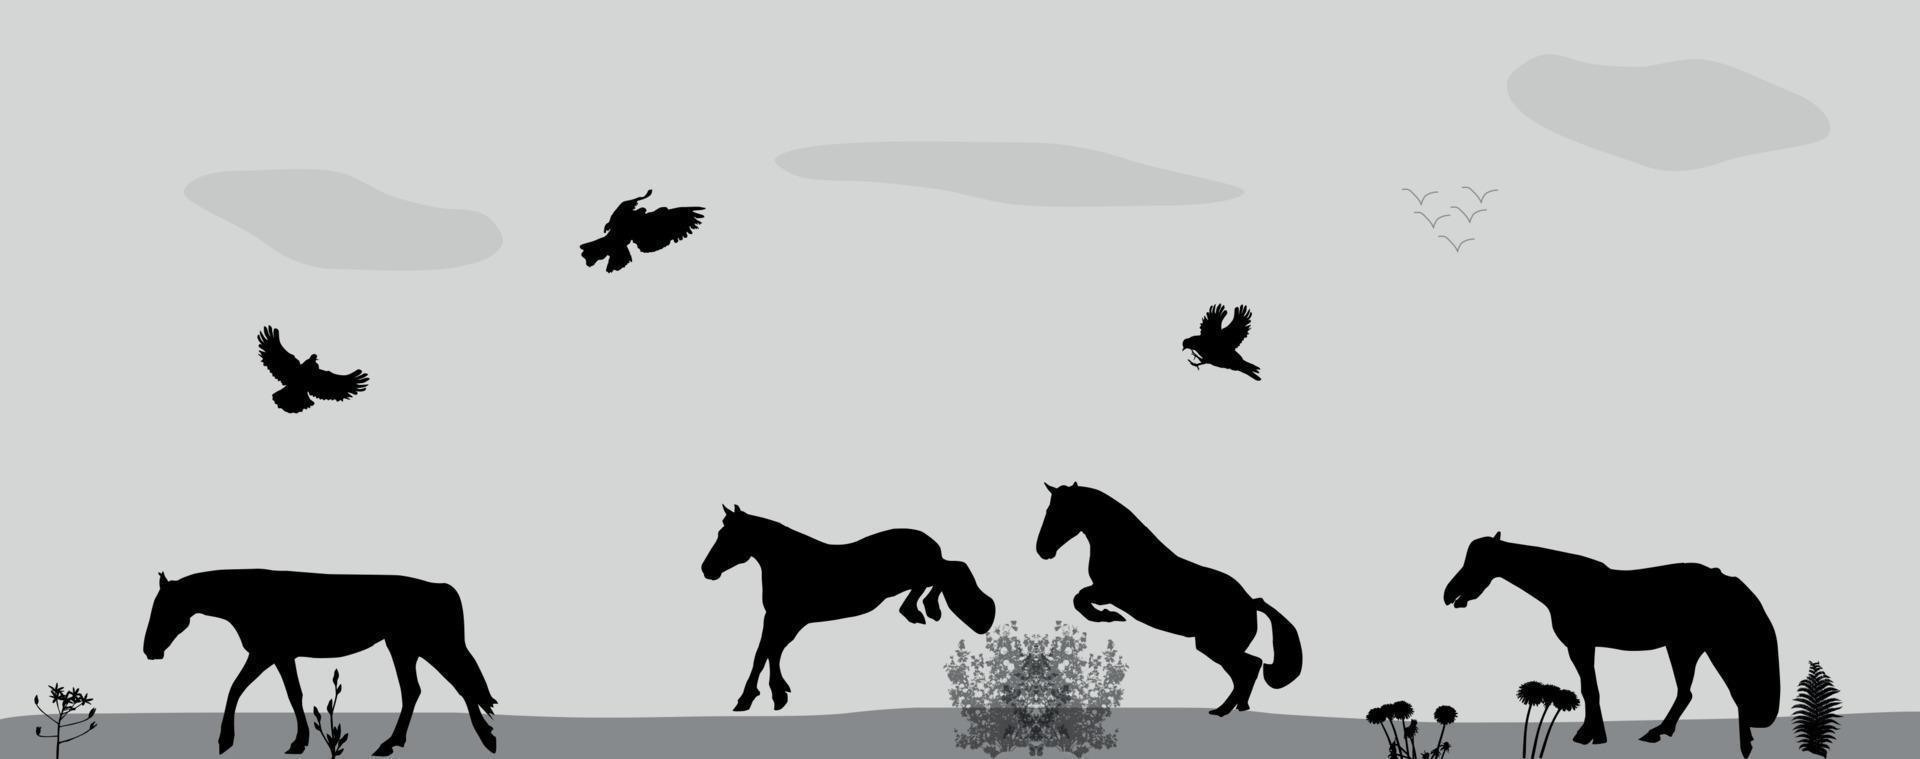 les chevaux sautent, les oiseaux volent dans la nature. illustration vectorielle. vecteur